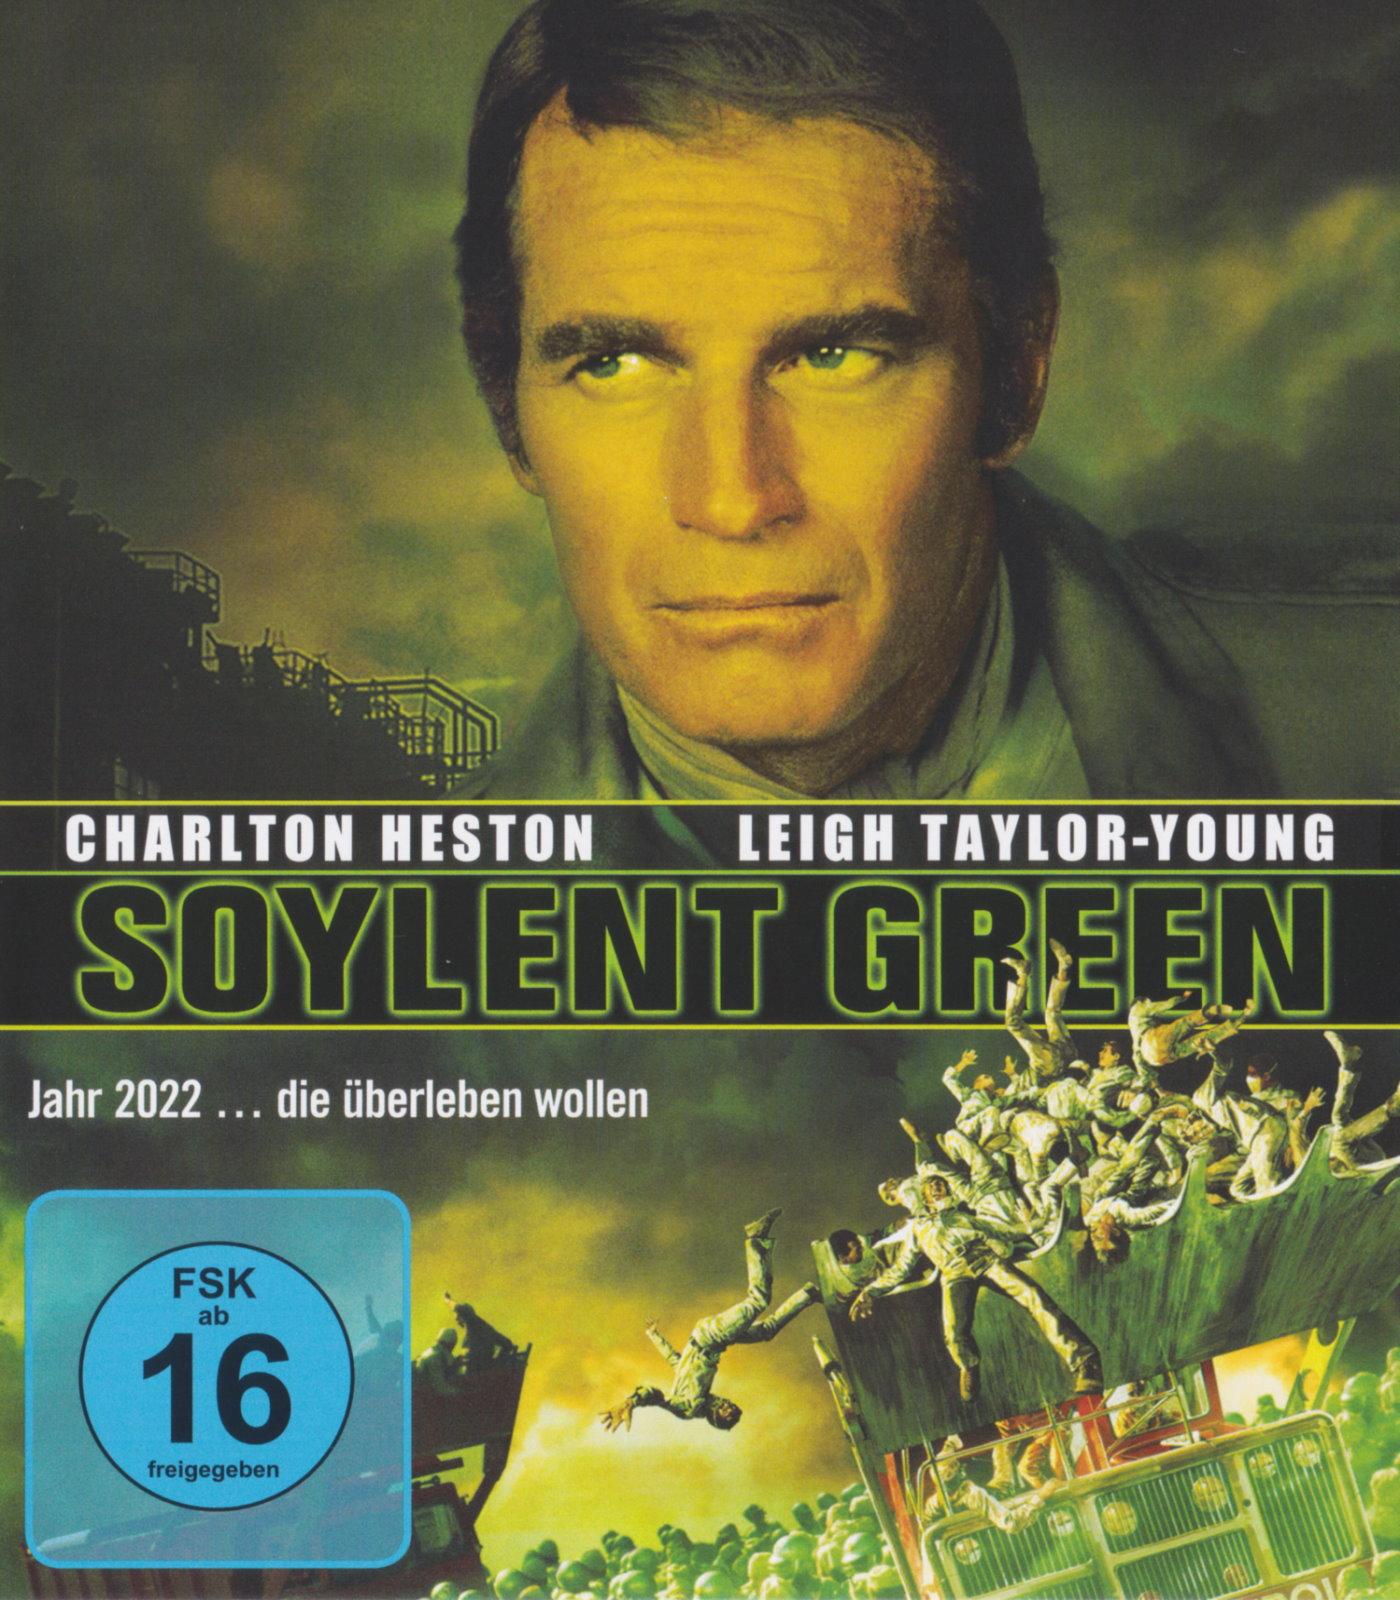 Cover - Soylent Green - ...Jahr 2022... die überleben wollen....jpg